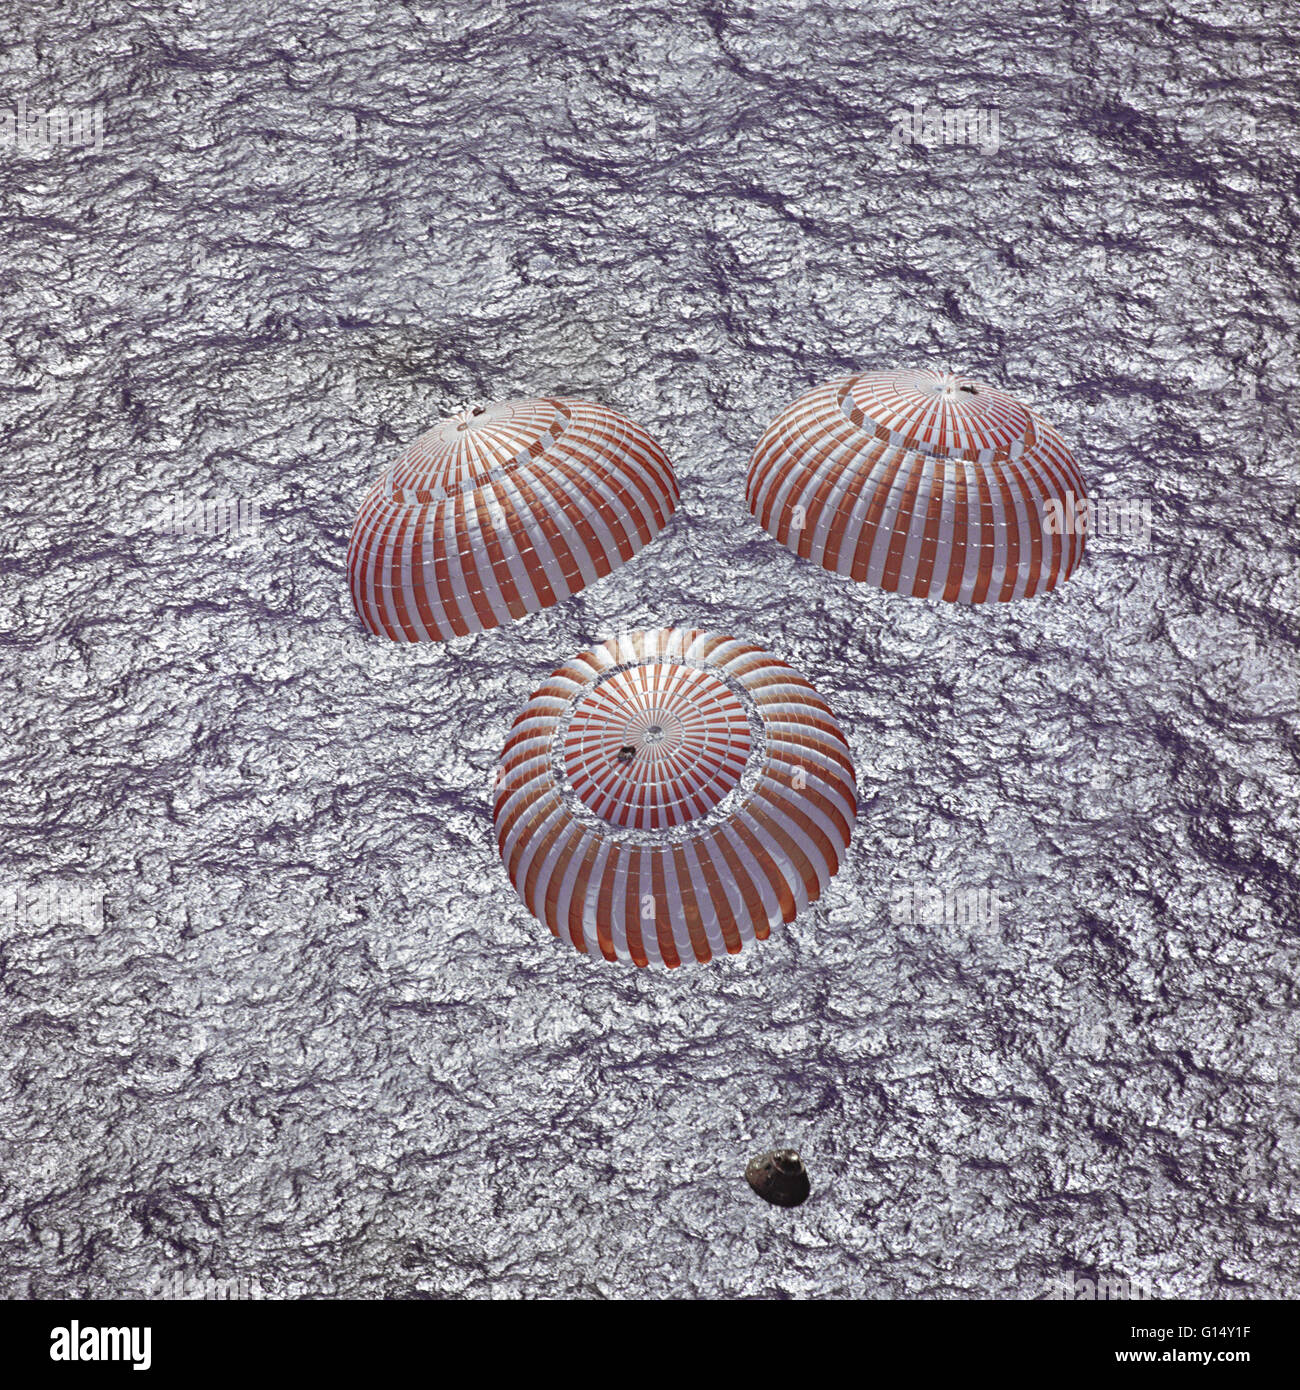 Der Apollo 16-Command-Modul mit Astronauten an Bord, Charles M. Duke Jr., John W. Young und Thomas K. Mattingly II nähert sich Wasserung im zentralen Pazifischen Ozean, eine Mondlandung Mission erfolgreich abzuschließen. Dieser Overhead Bild entstand aus einer reco Stockfoto